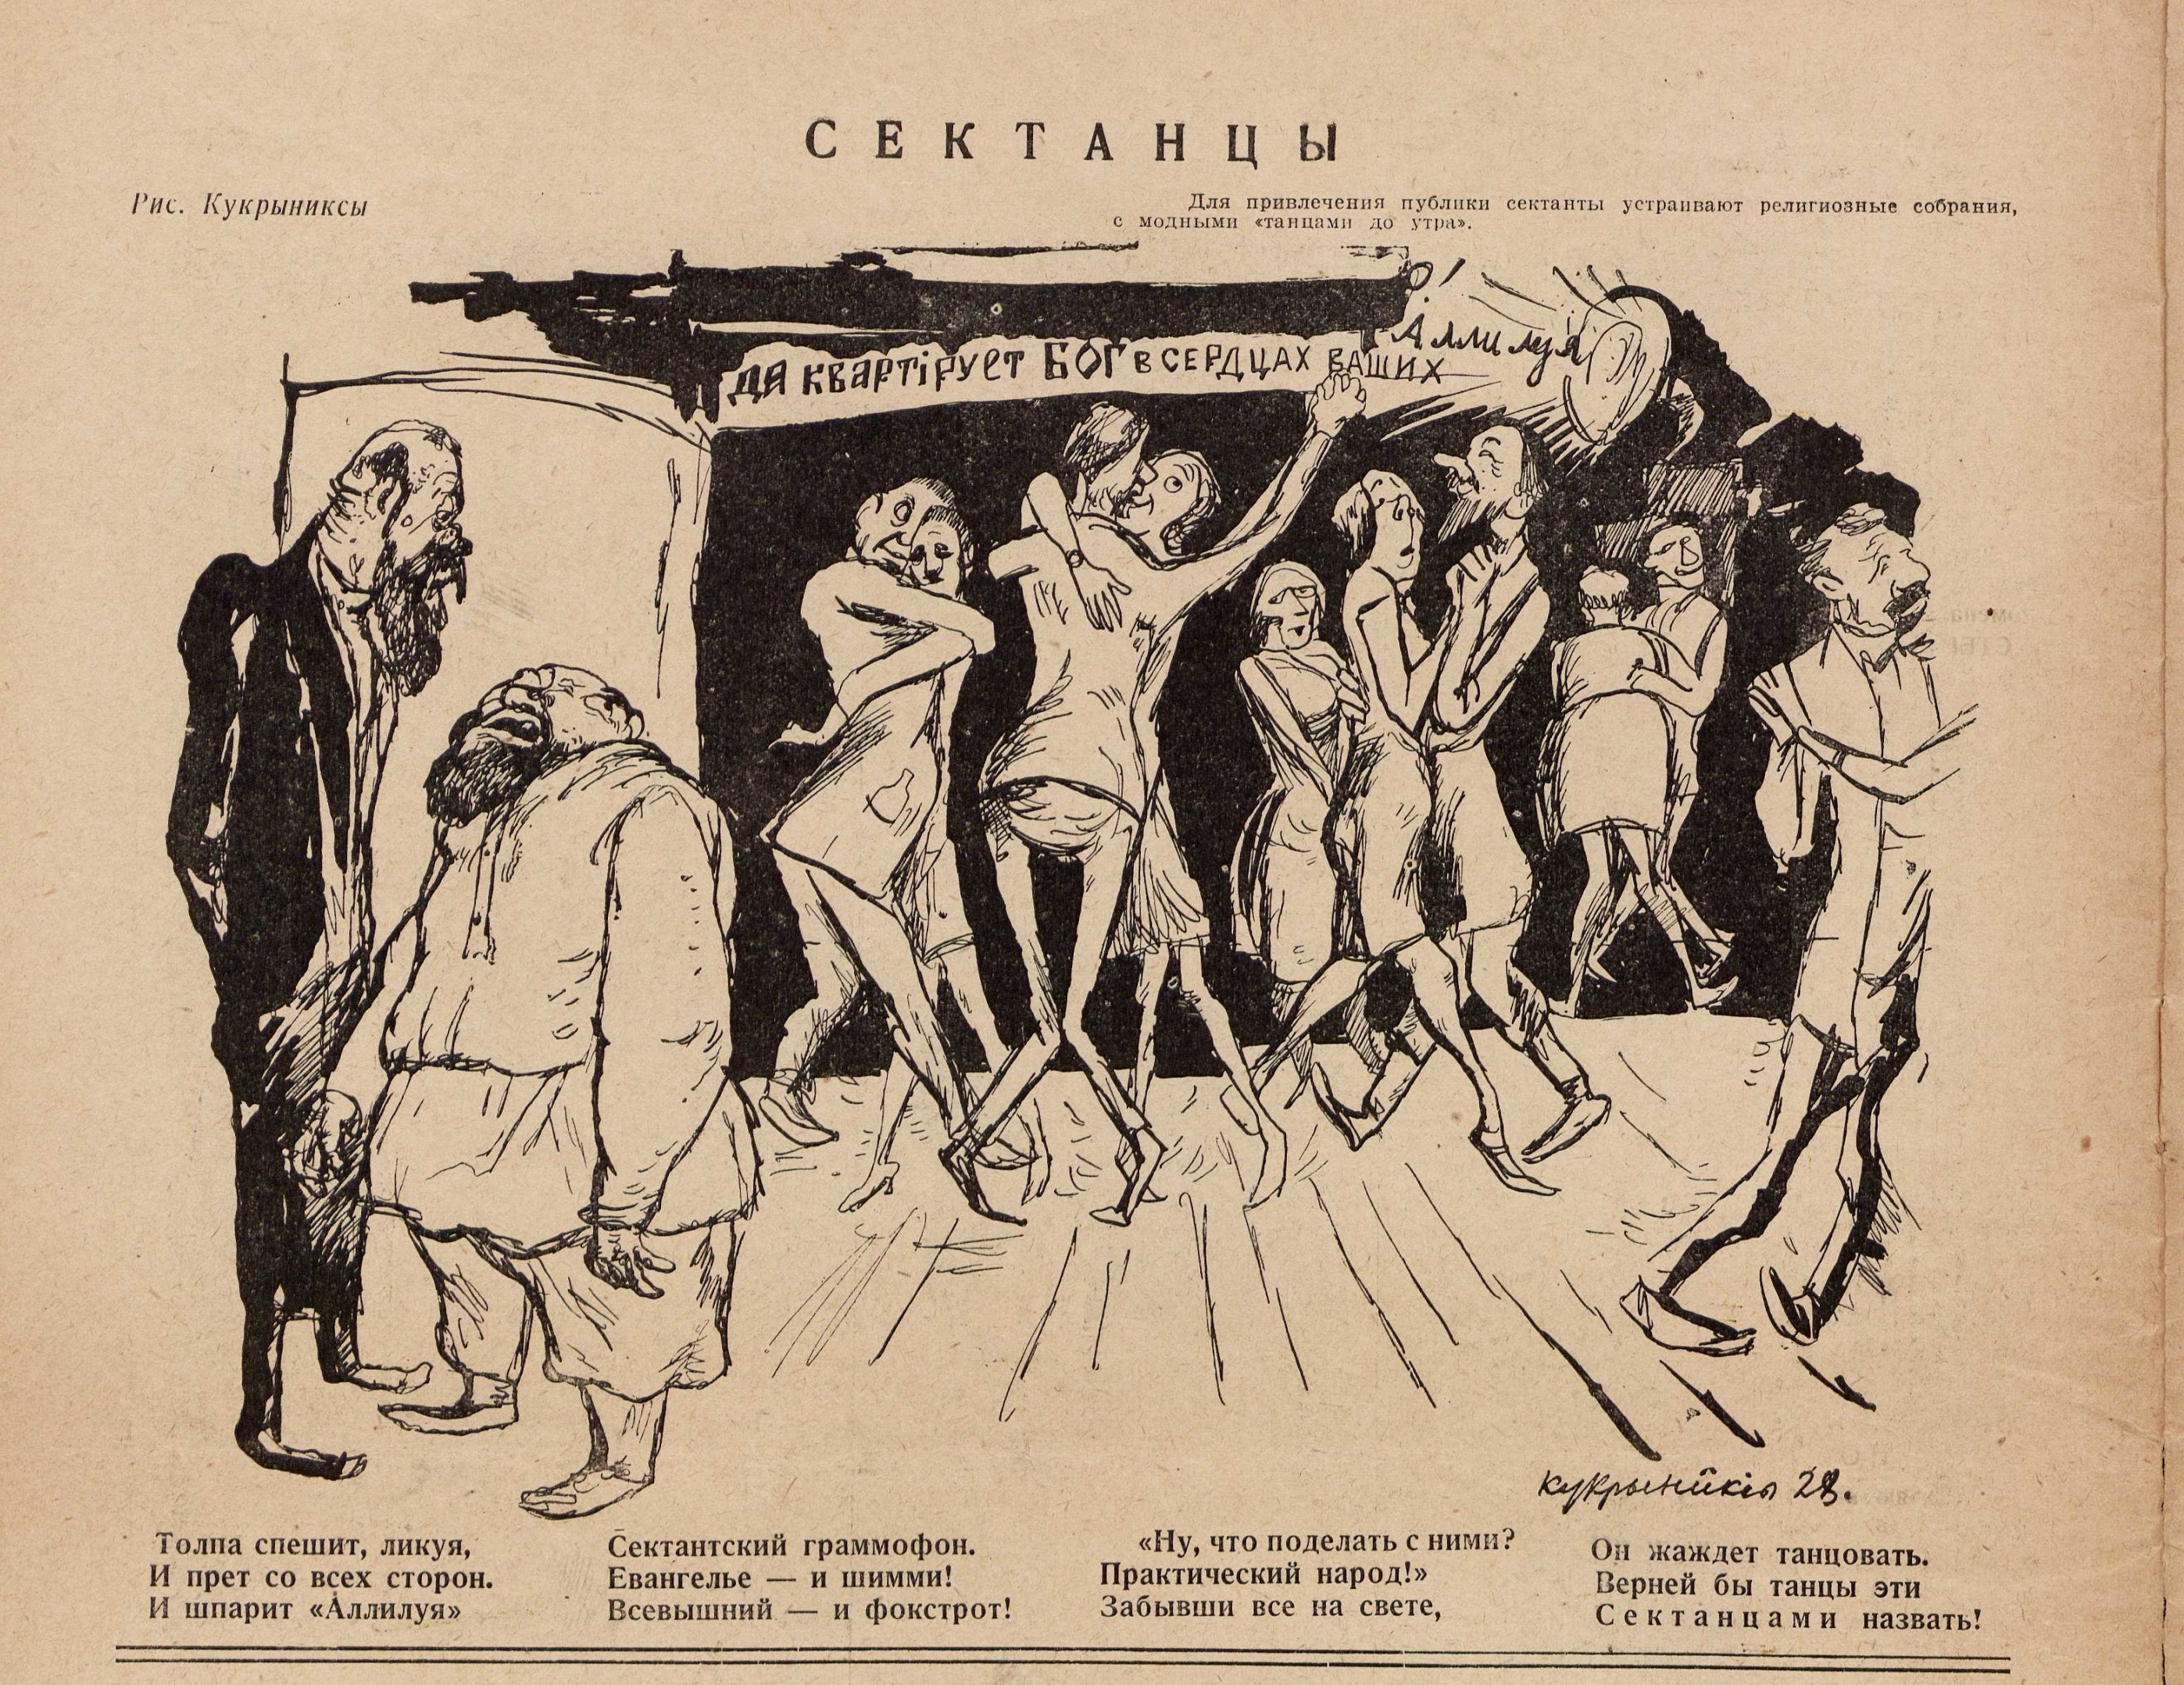 Карикатура "Сектанцы"